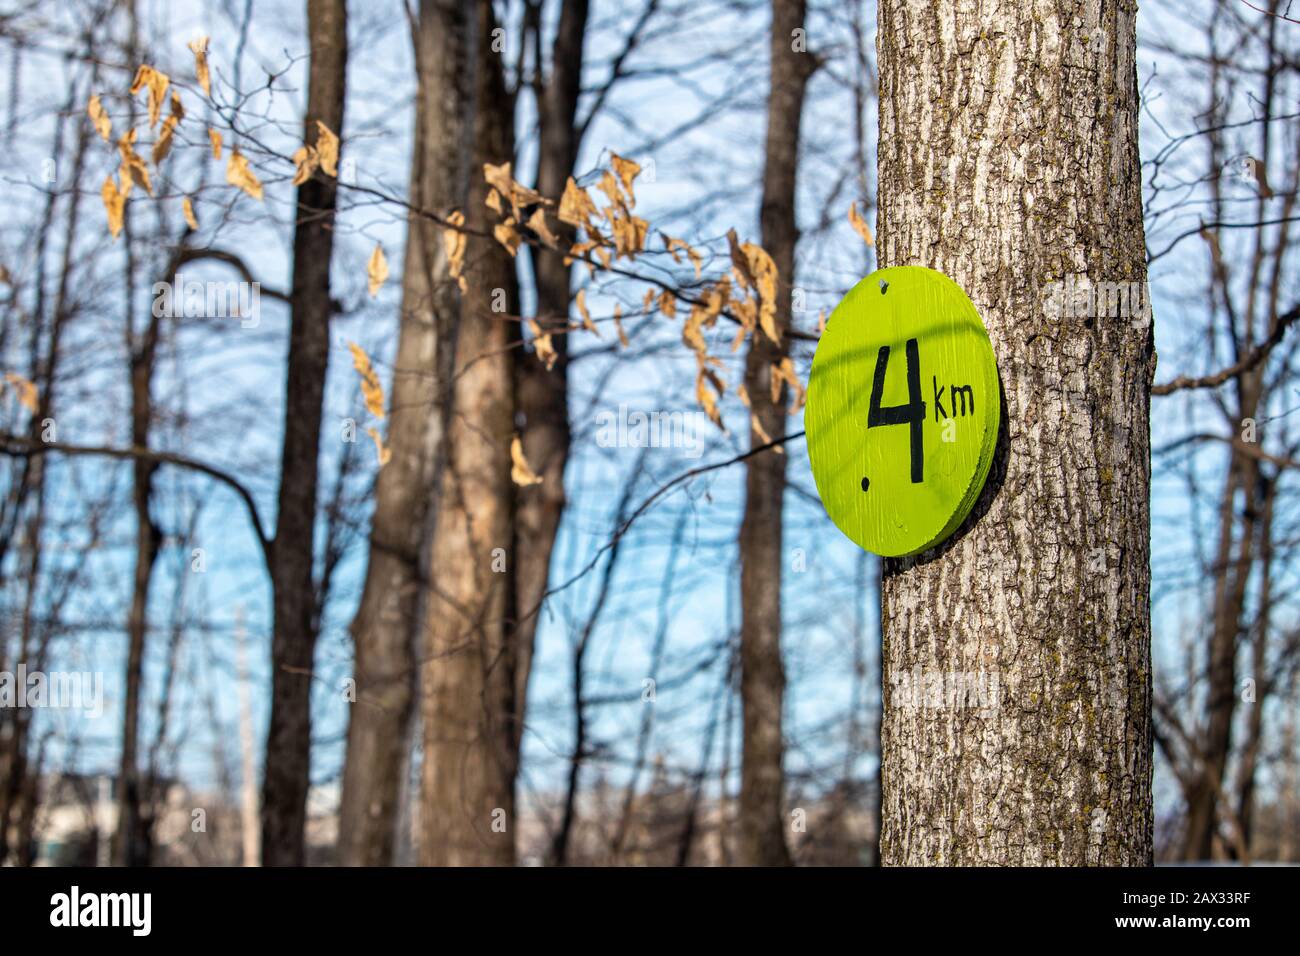 Un cartello in legno serve da segnavia dal suo monte inchiodato ad un albero. Il pennarello è dipinto di verde e indica "4 km" o quattro chilometri. Foto Stock